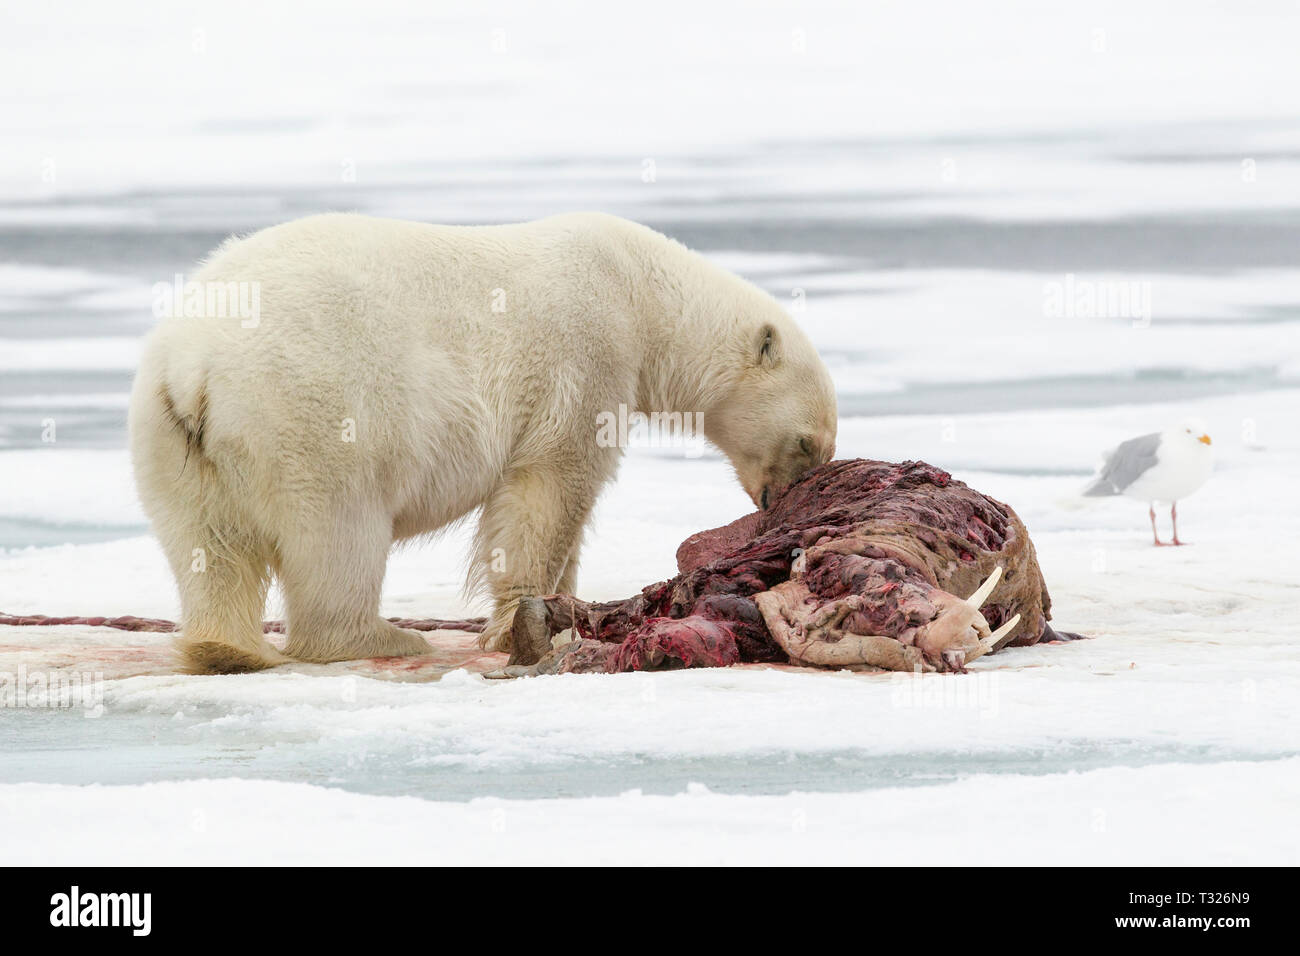 Alimentación de osos polares muertos morsa, Ursus maritimus, Spitsbergen, Océano ártico, Noruega Foto de stock